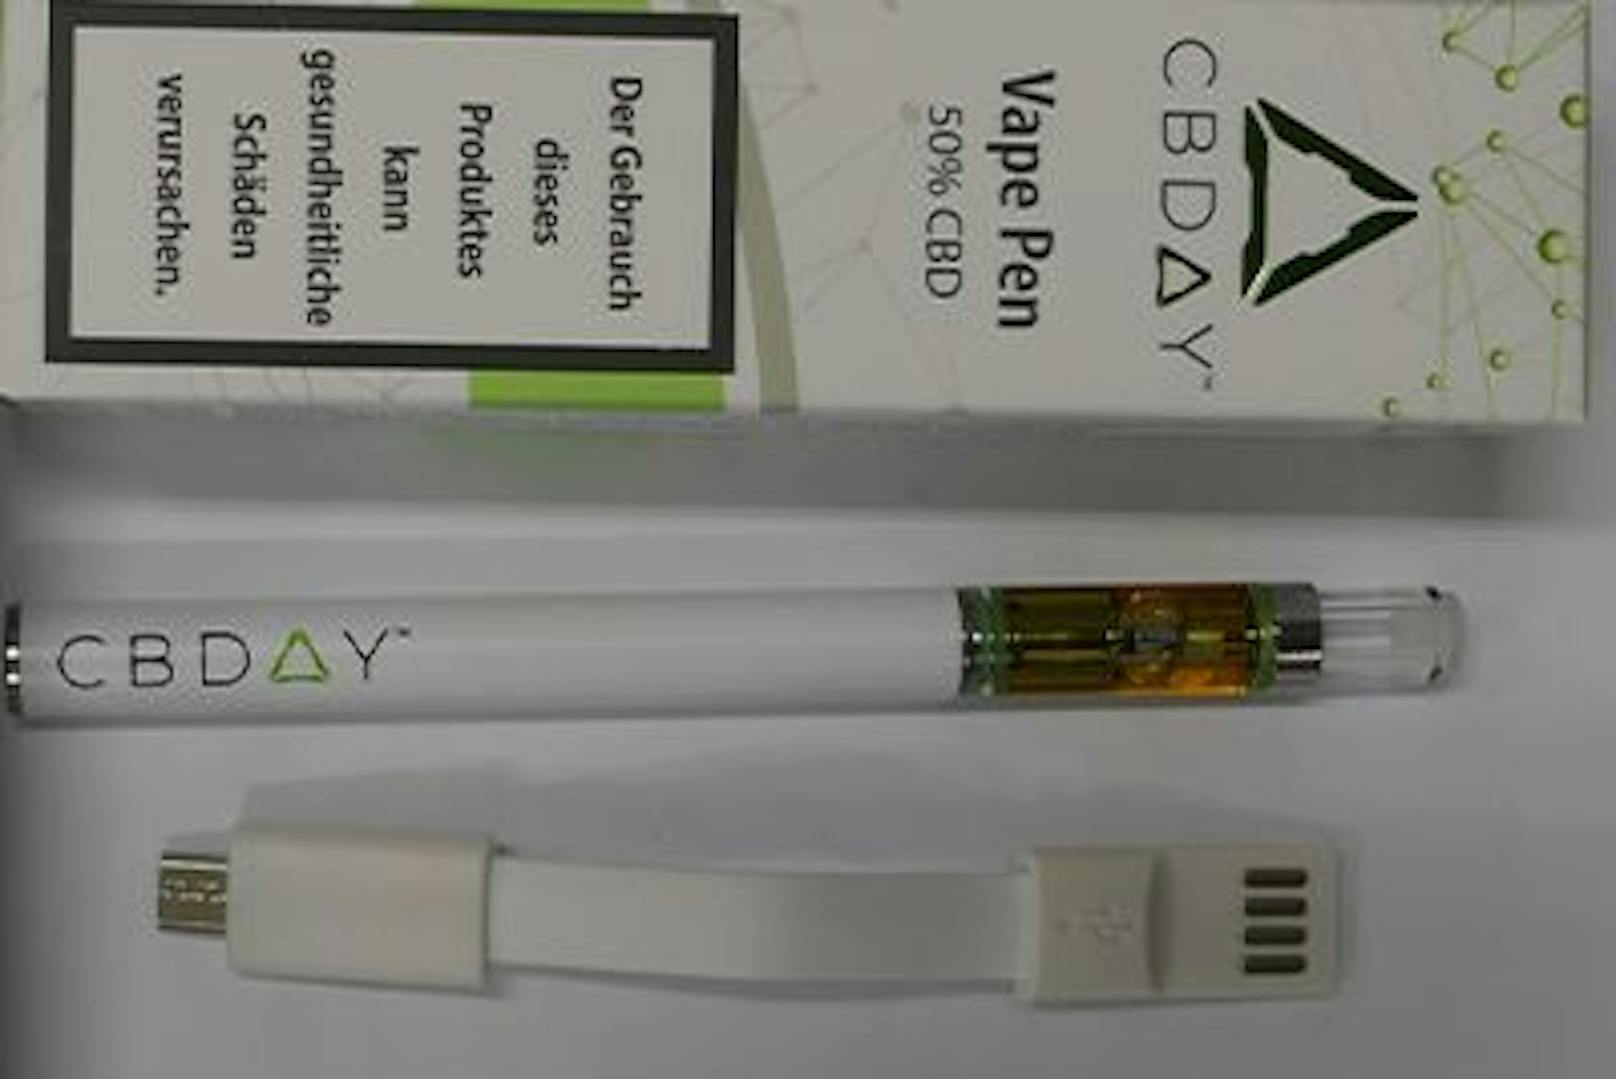 Die elektronische Zigarette "CBDAY Vape Pen 50 % CBD" wurde zurückgerufen.